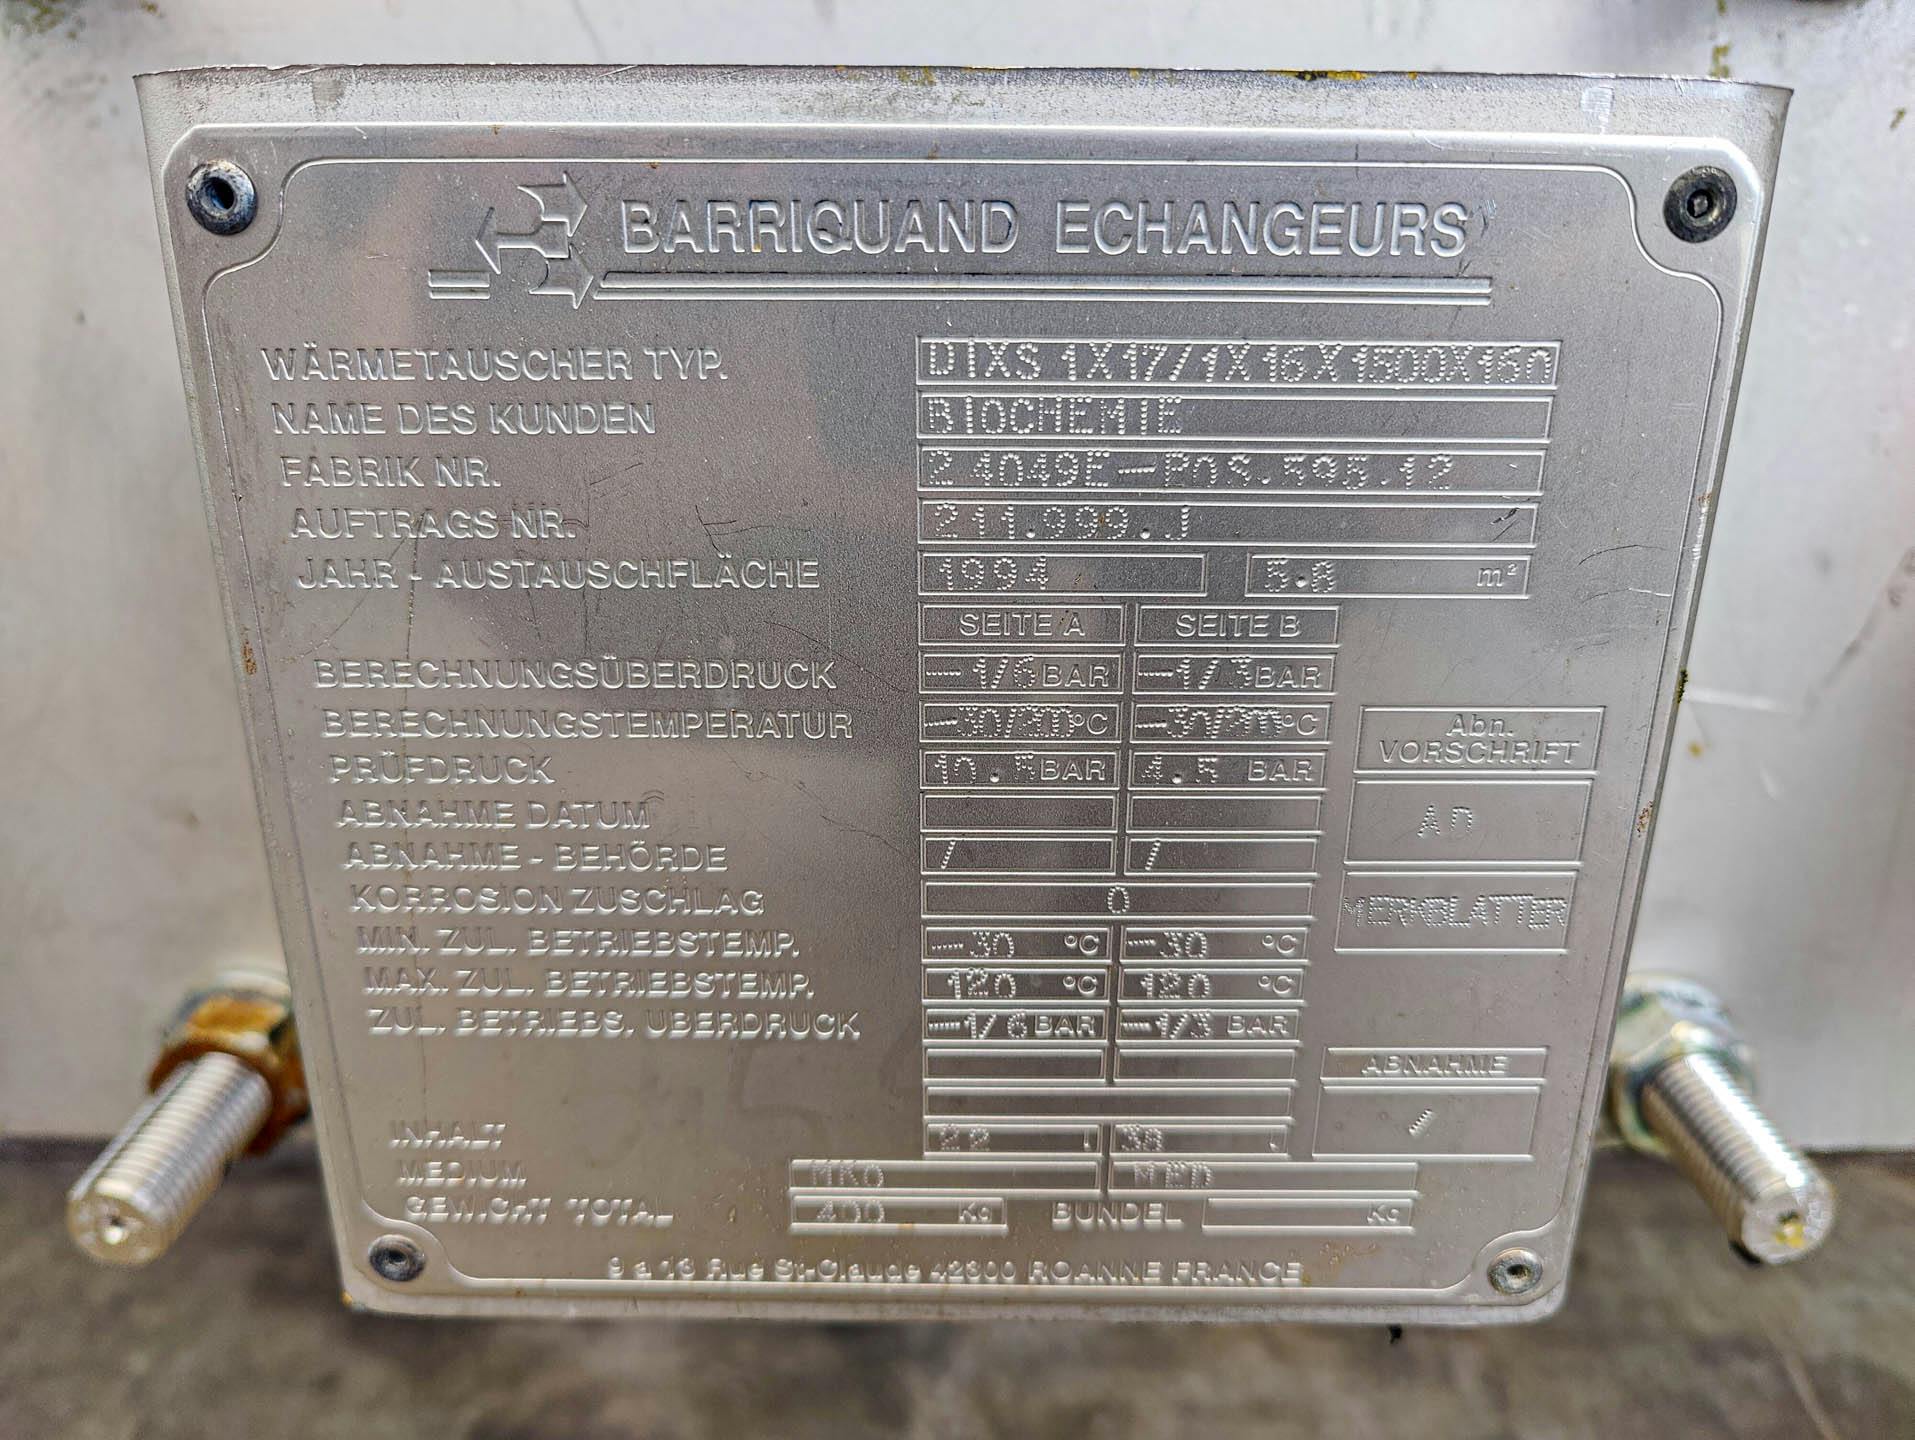 Barriquand Platular DIXS 1x17/1x16/1500/160 welded plate heat exchanger - Echangeur de chaleur à plaques - image 6